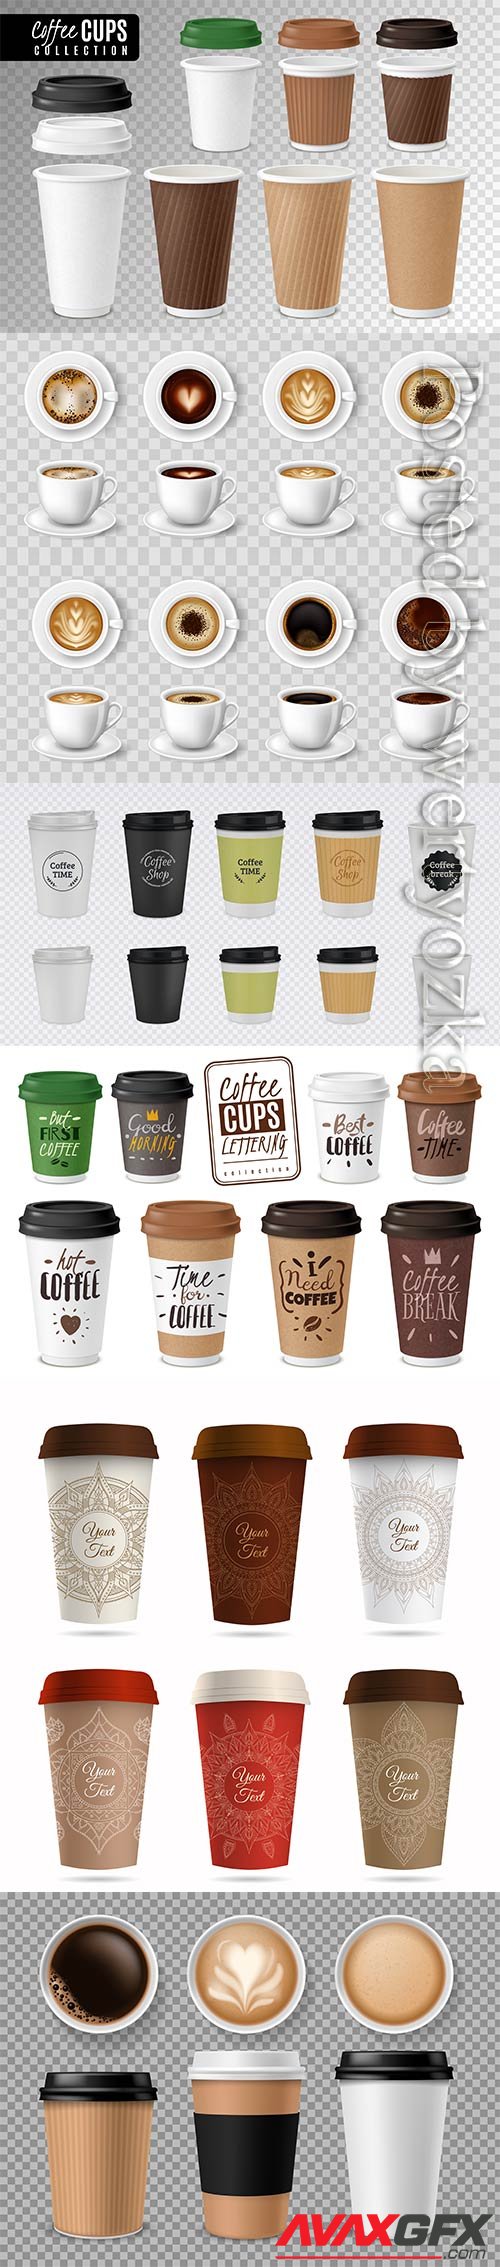 Realistic coffee cups, black coffee, cappuccino, latte, espresso